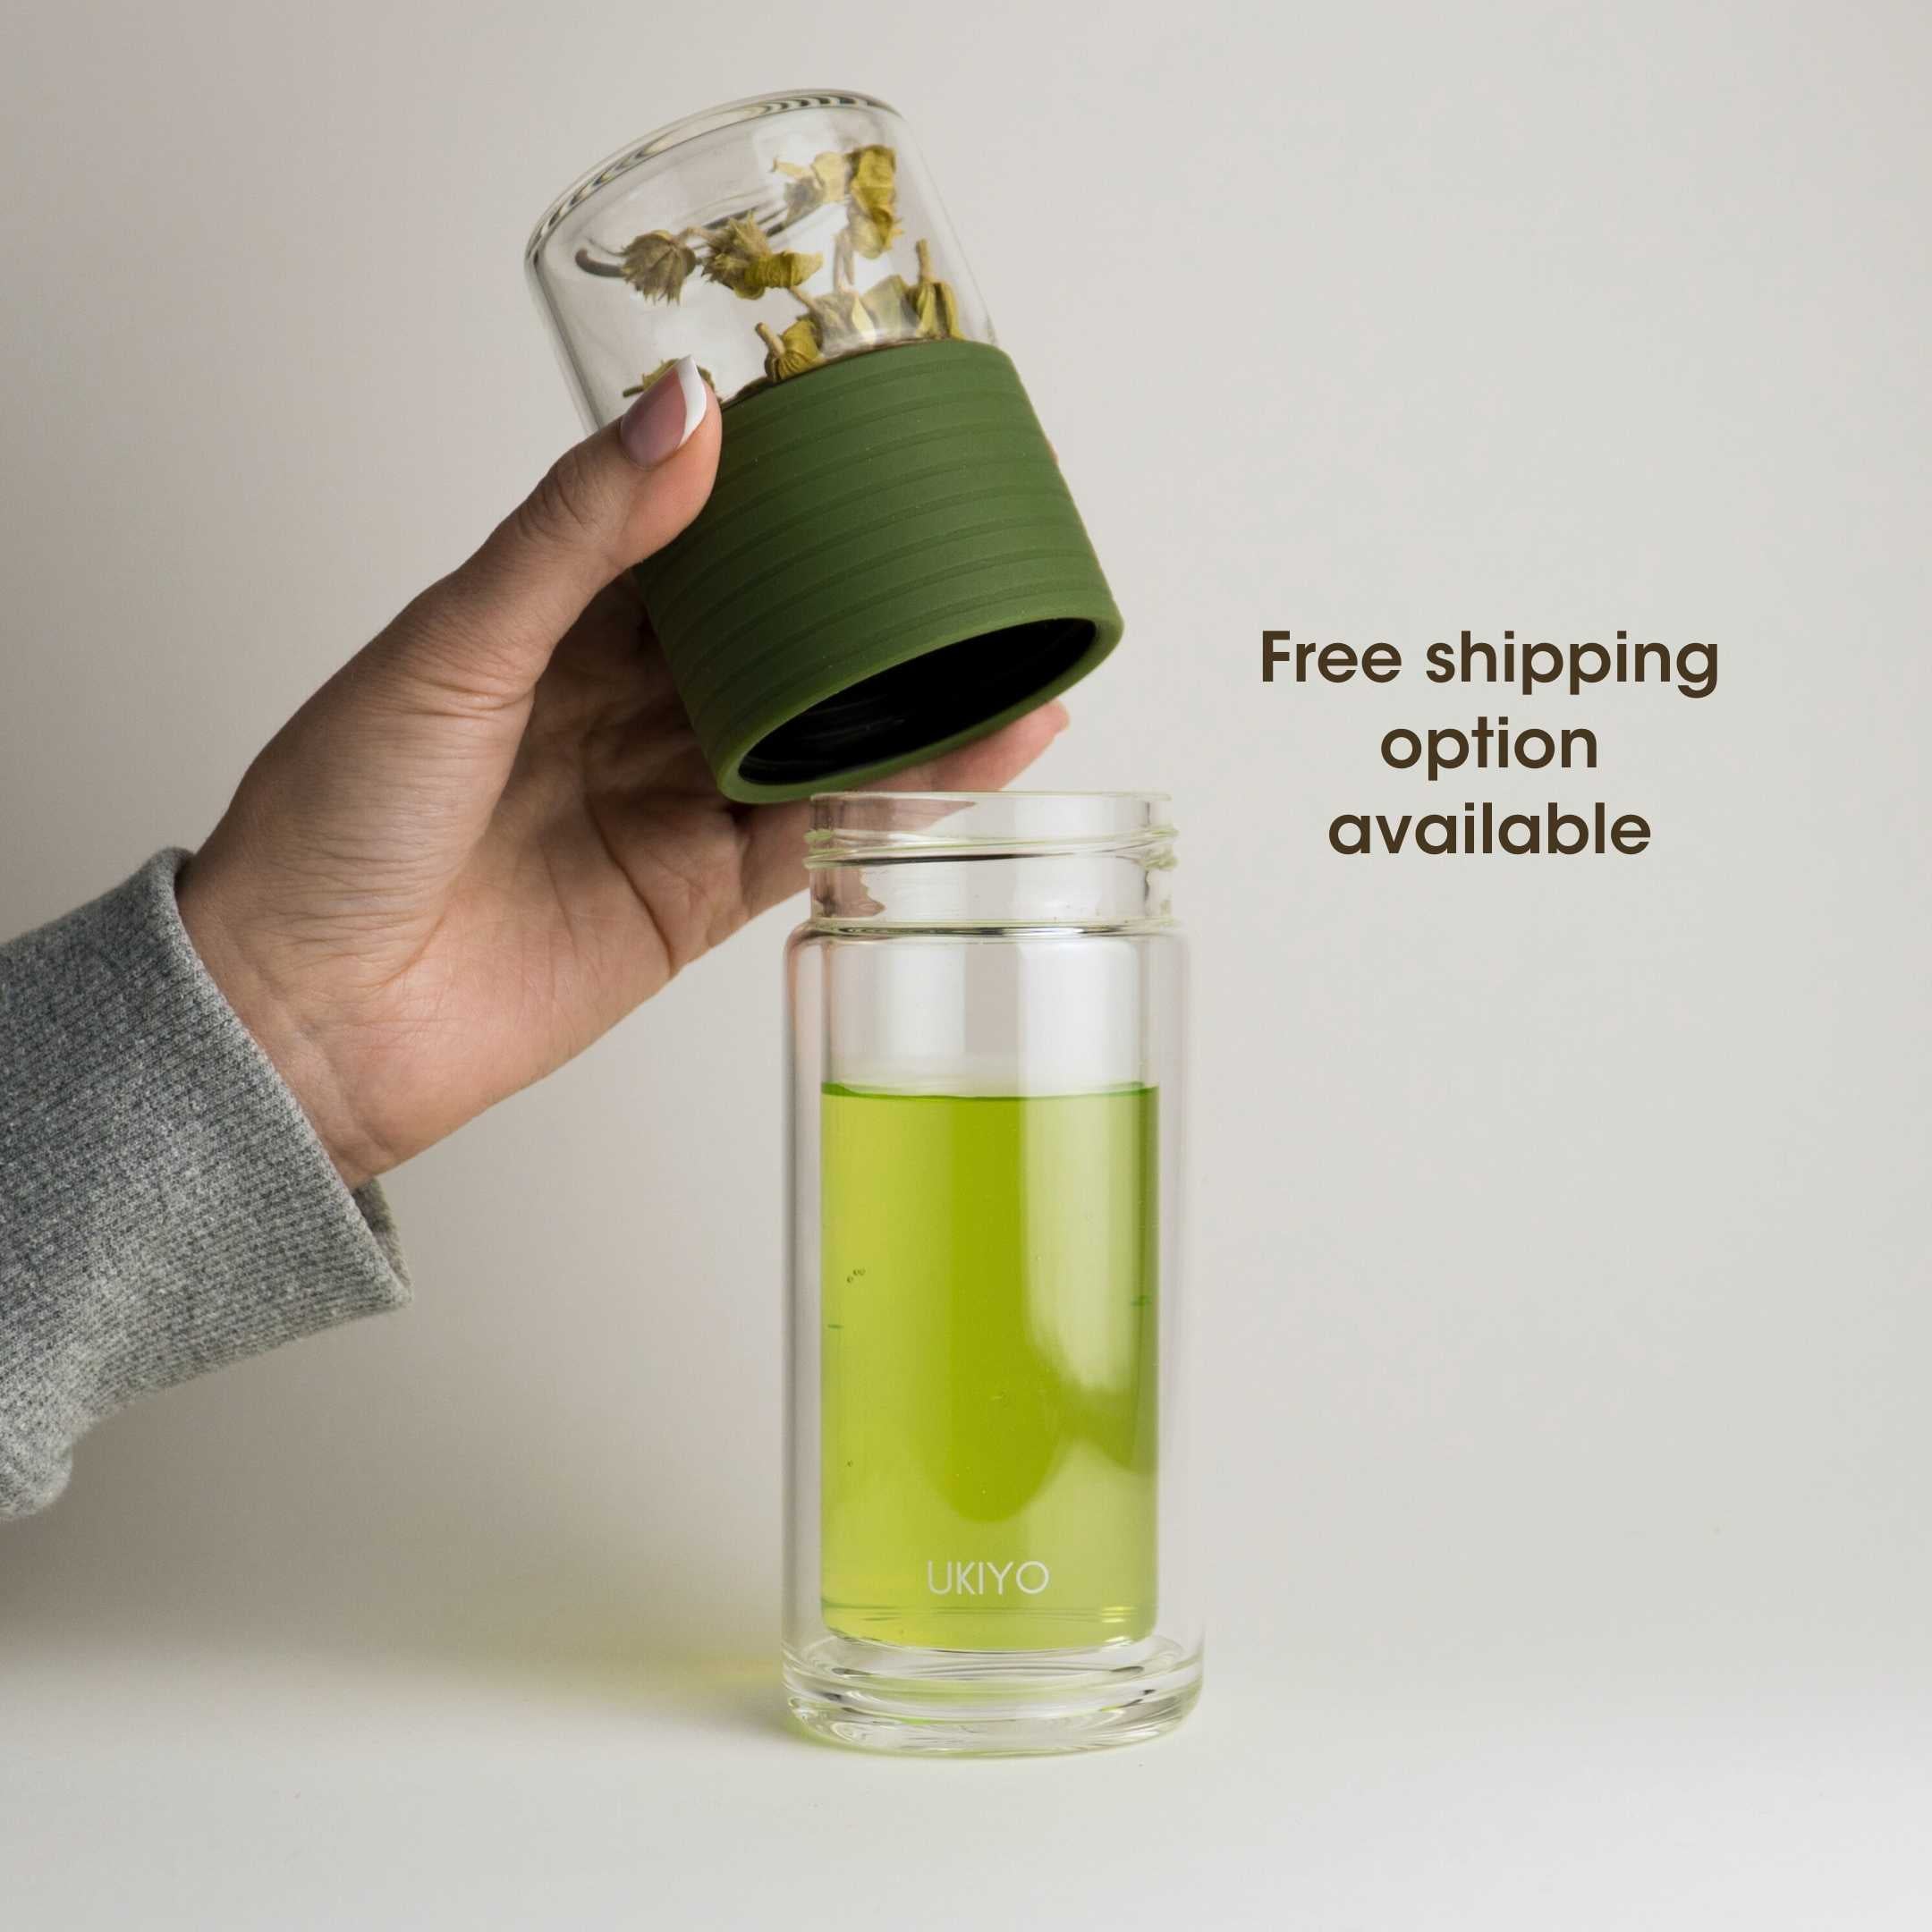 Ukiyo Sense - Double-Wall Glass Tea Infuser